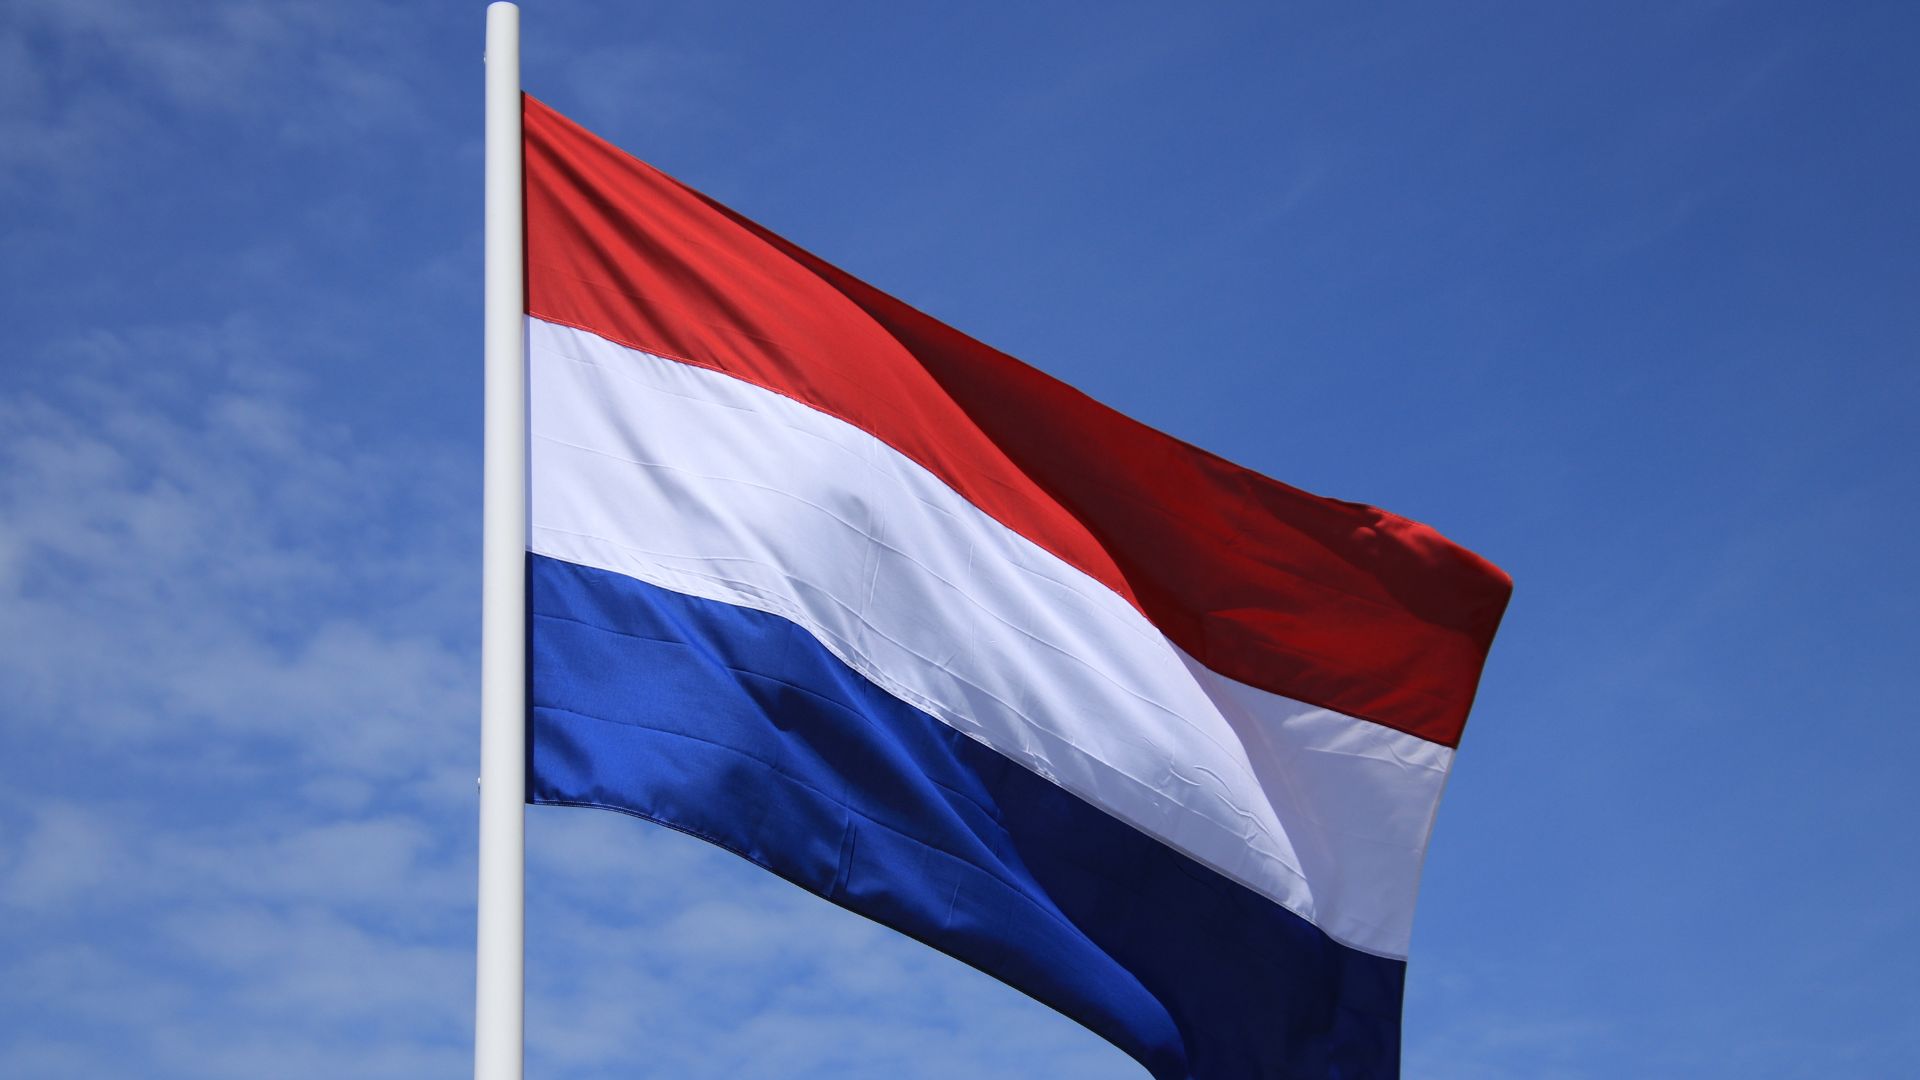 Streit in Niederlanden ums Nitrat: "Handfeste Vertrauenskrise"